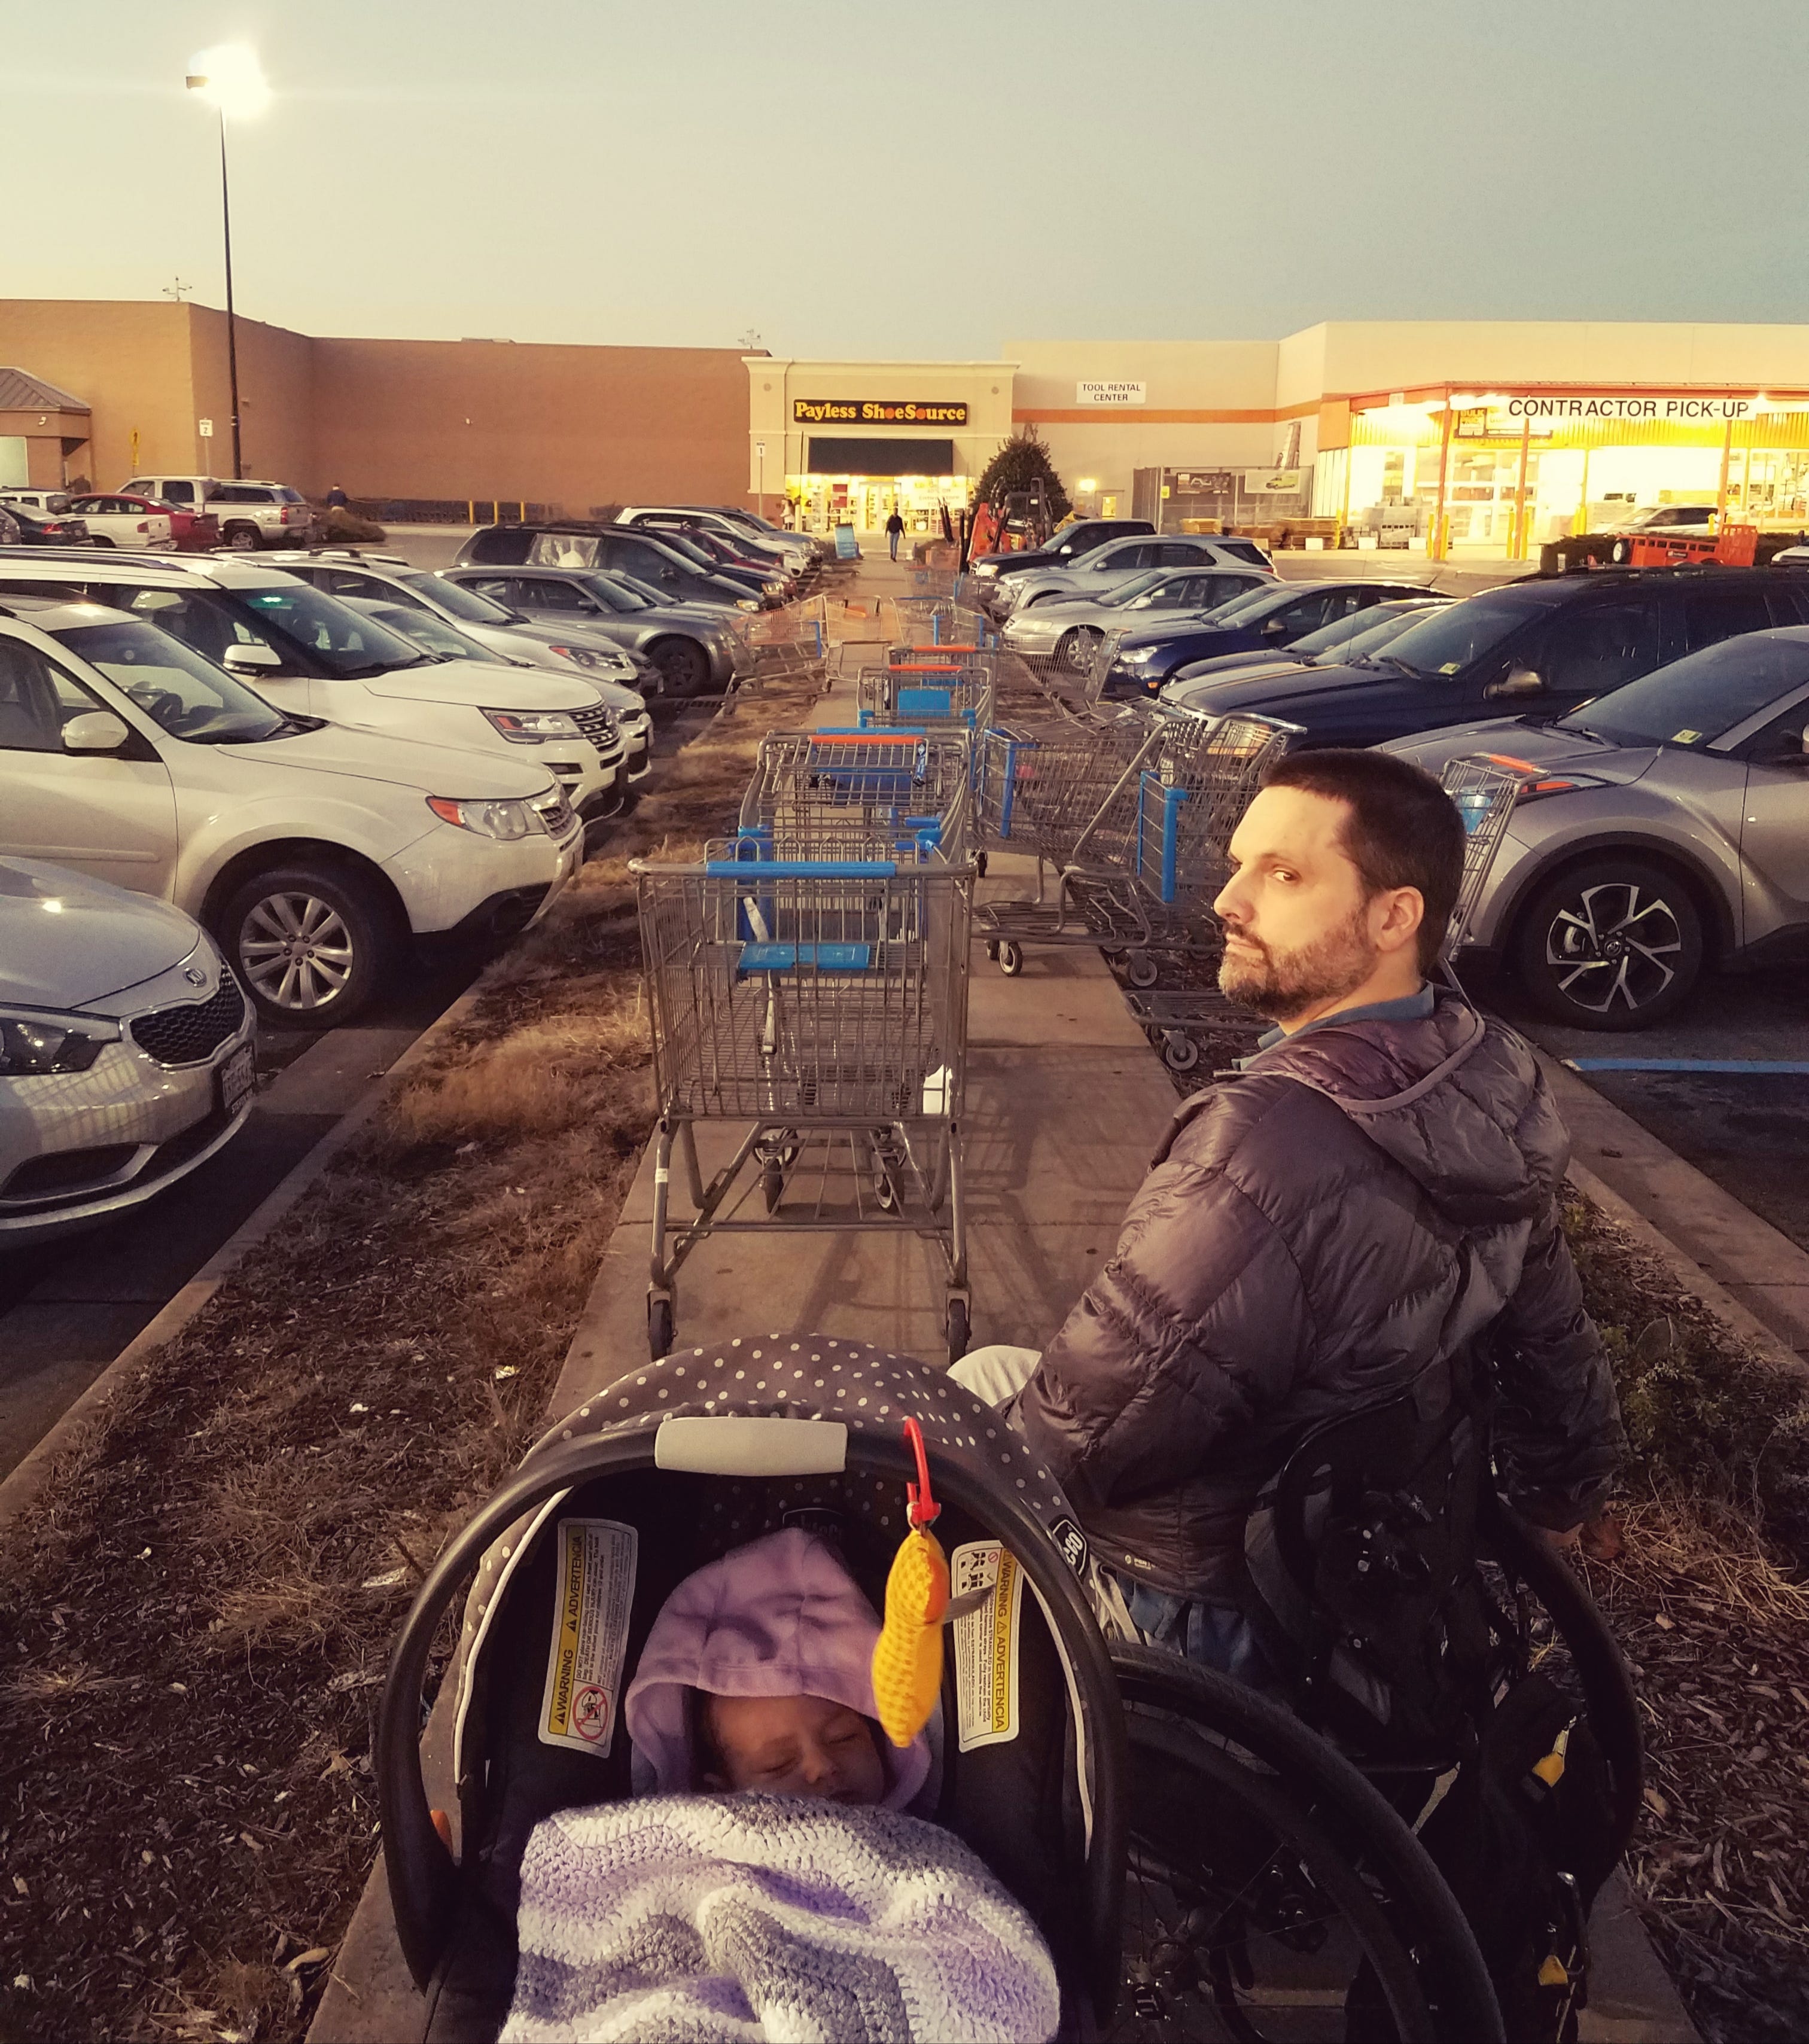 shopping cart like stroller